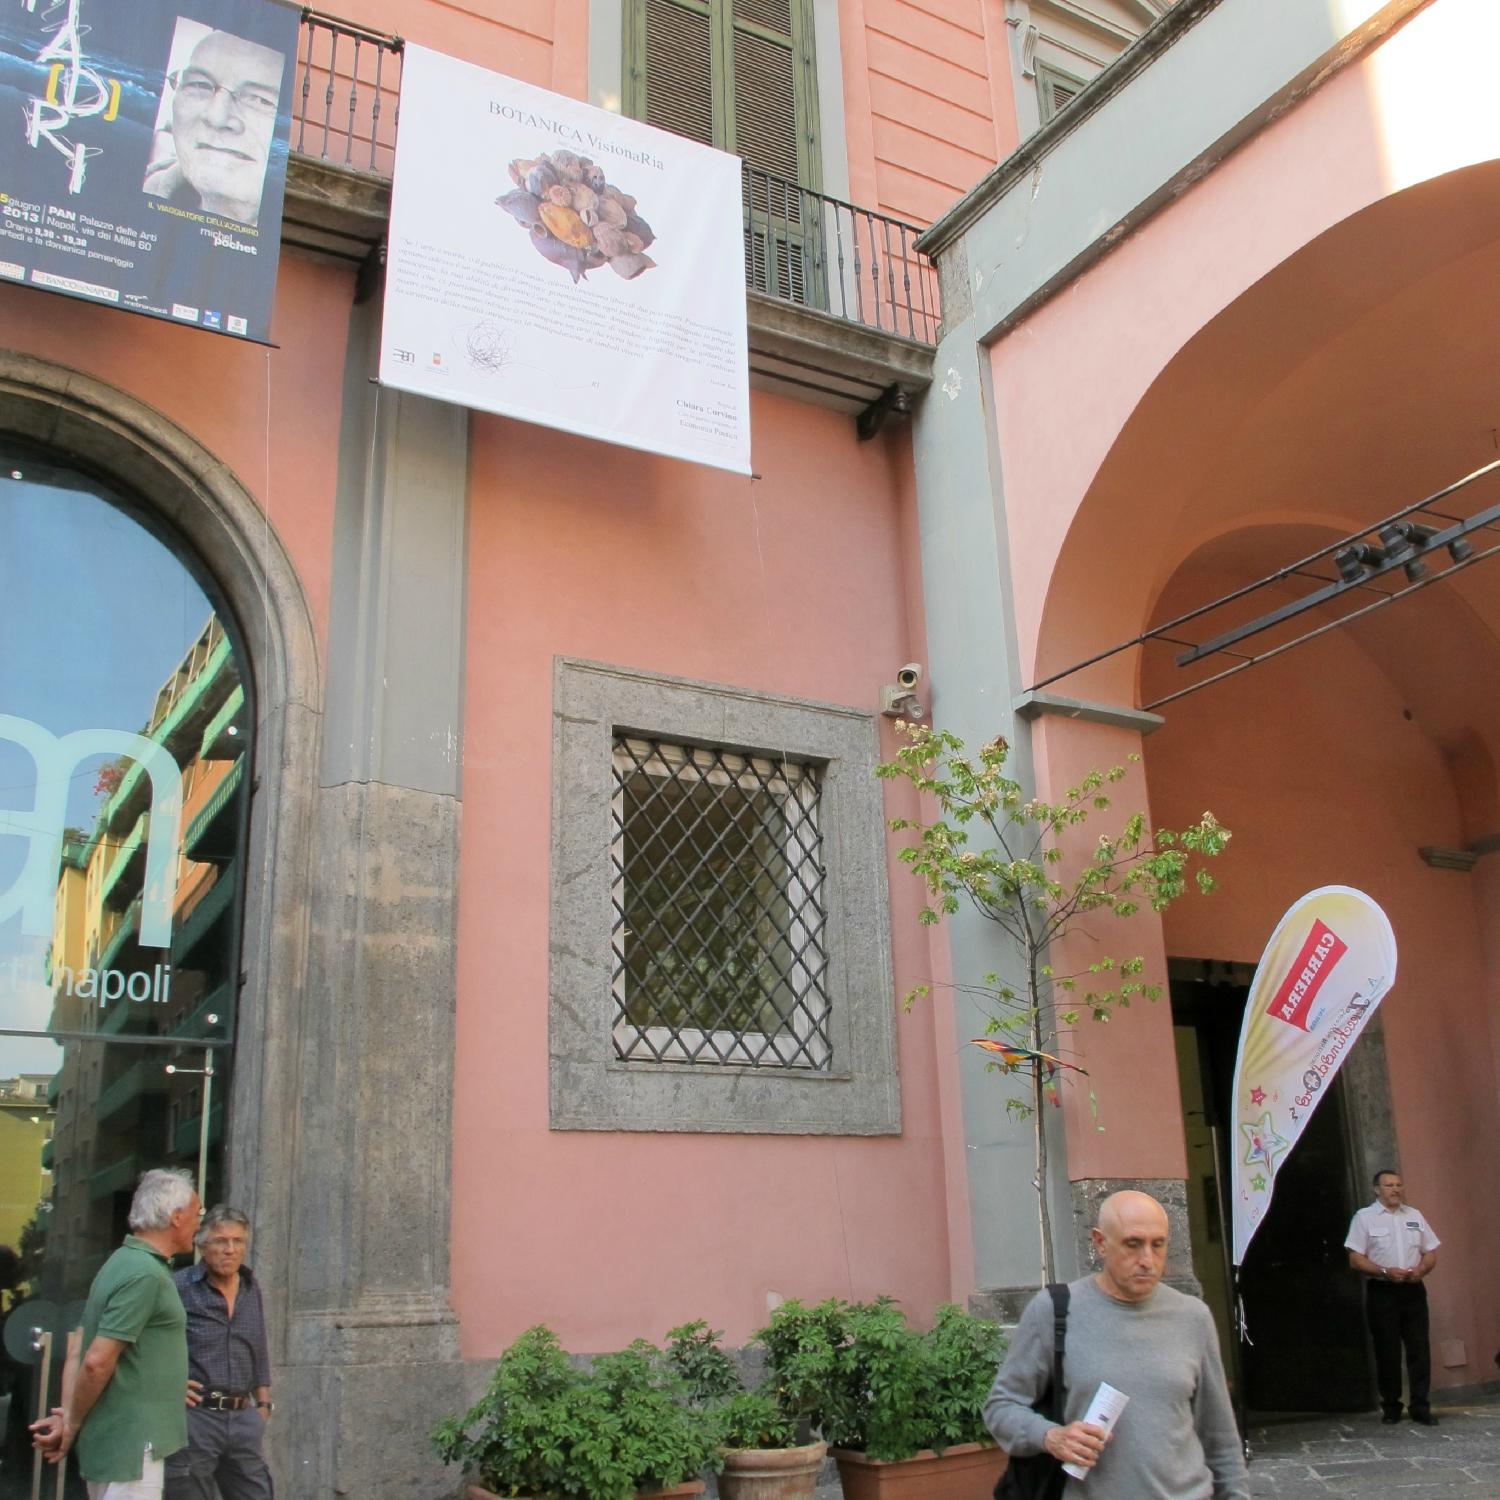 PAN, Palazzo delle Arti Napoli